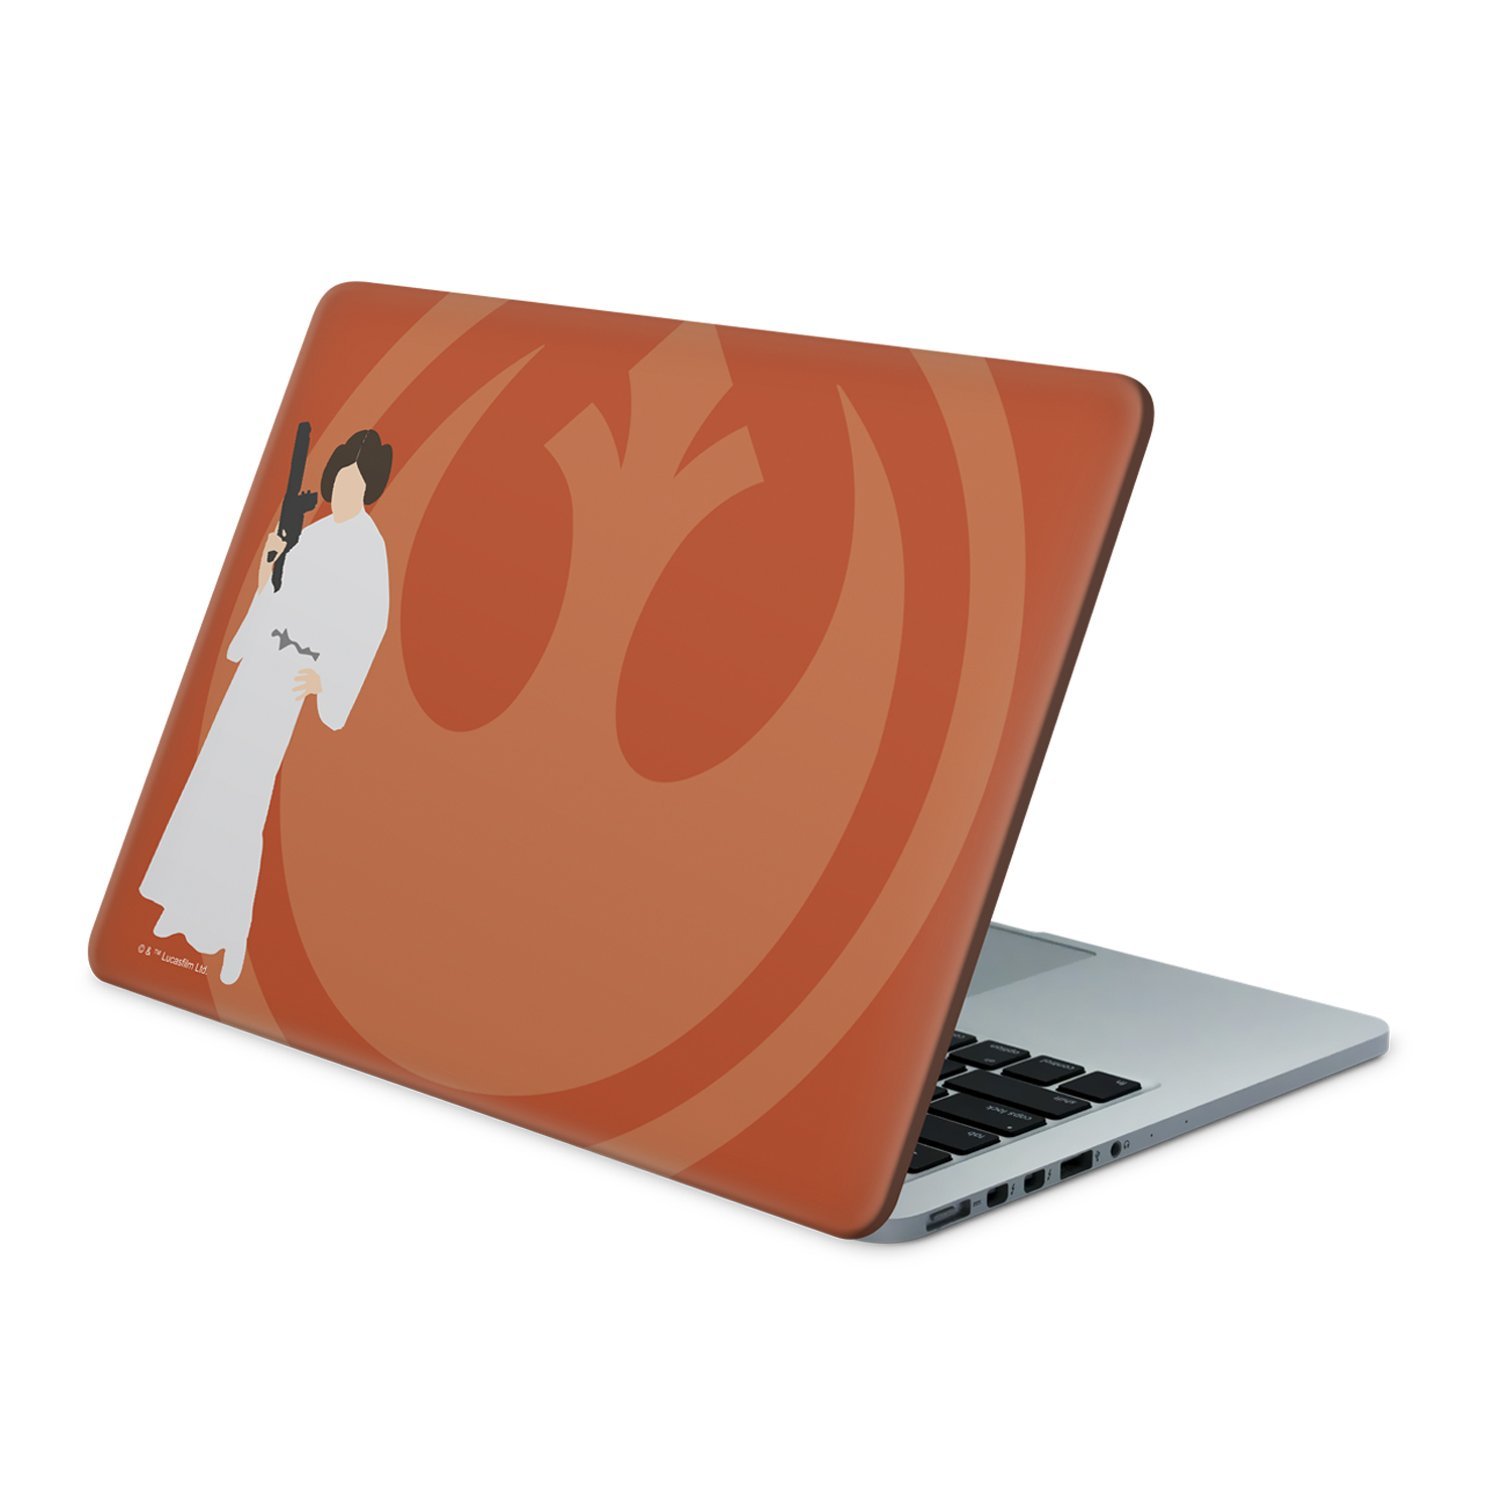 TLJ Princess Leia, Rebellion Laptop Wrap 3